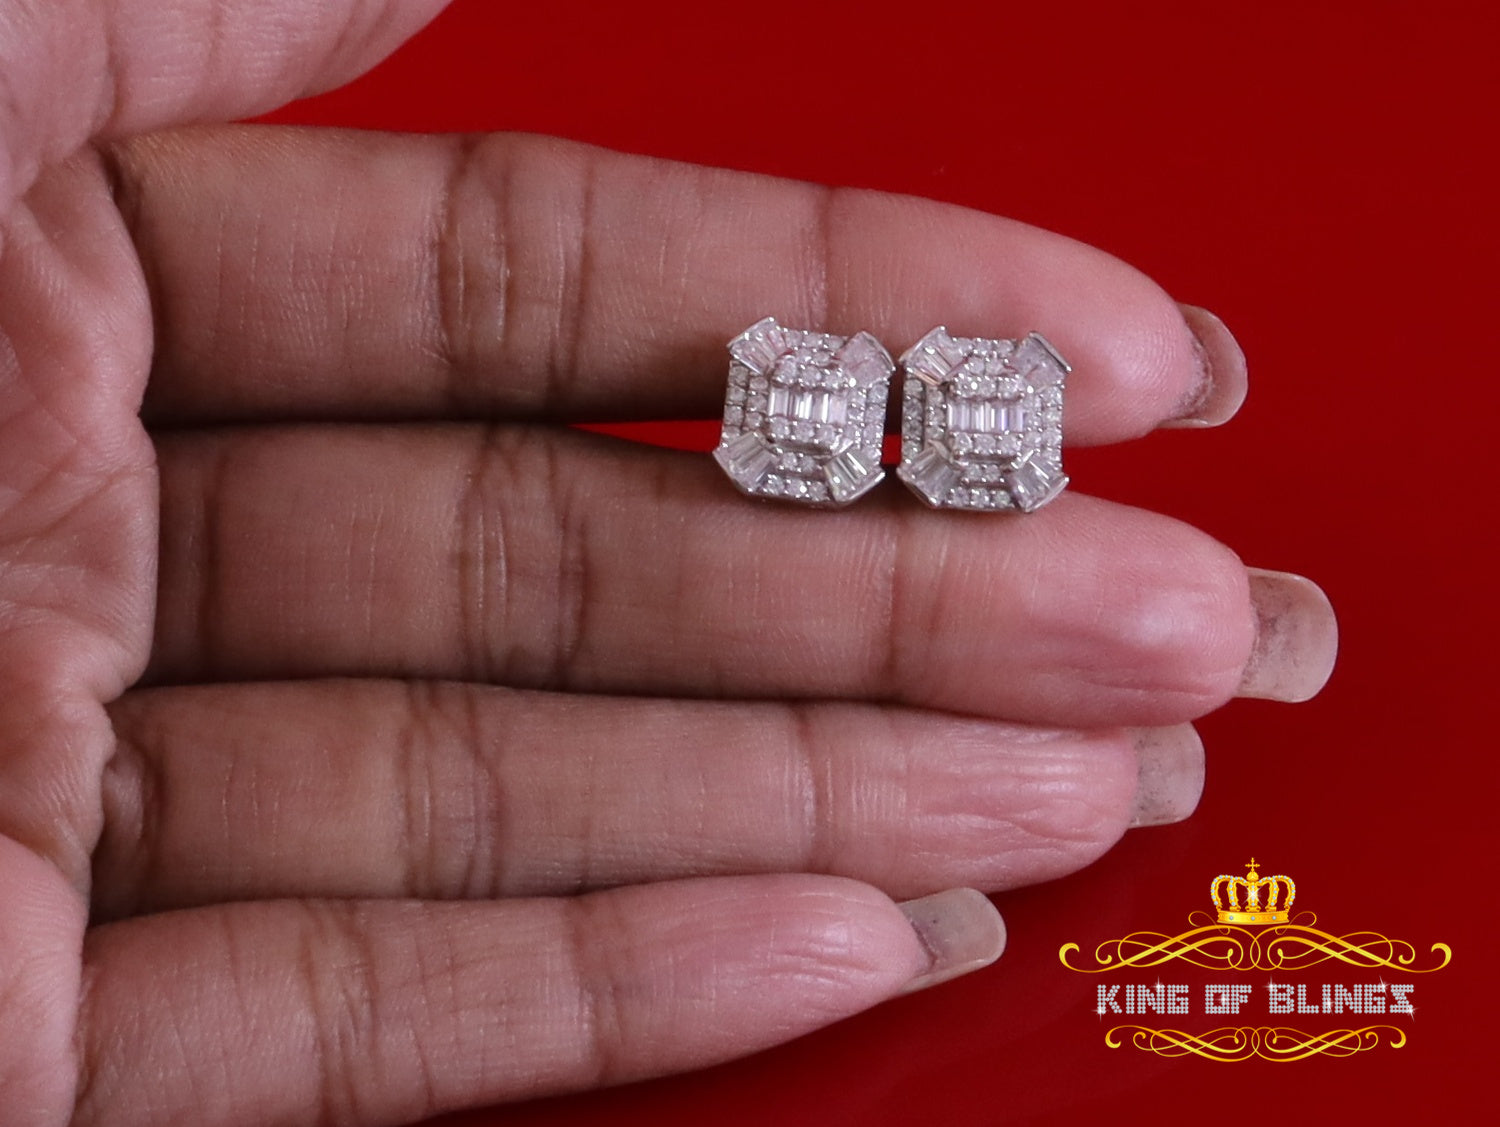 King of Bling's 925 White Silver 1.25ct VVS 'D' Moissanite Rectangle Stud Earring Men's/Womens King of Blings